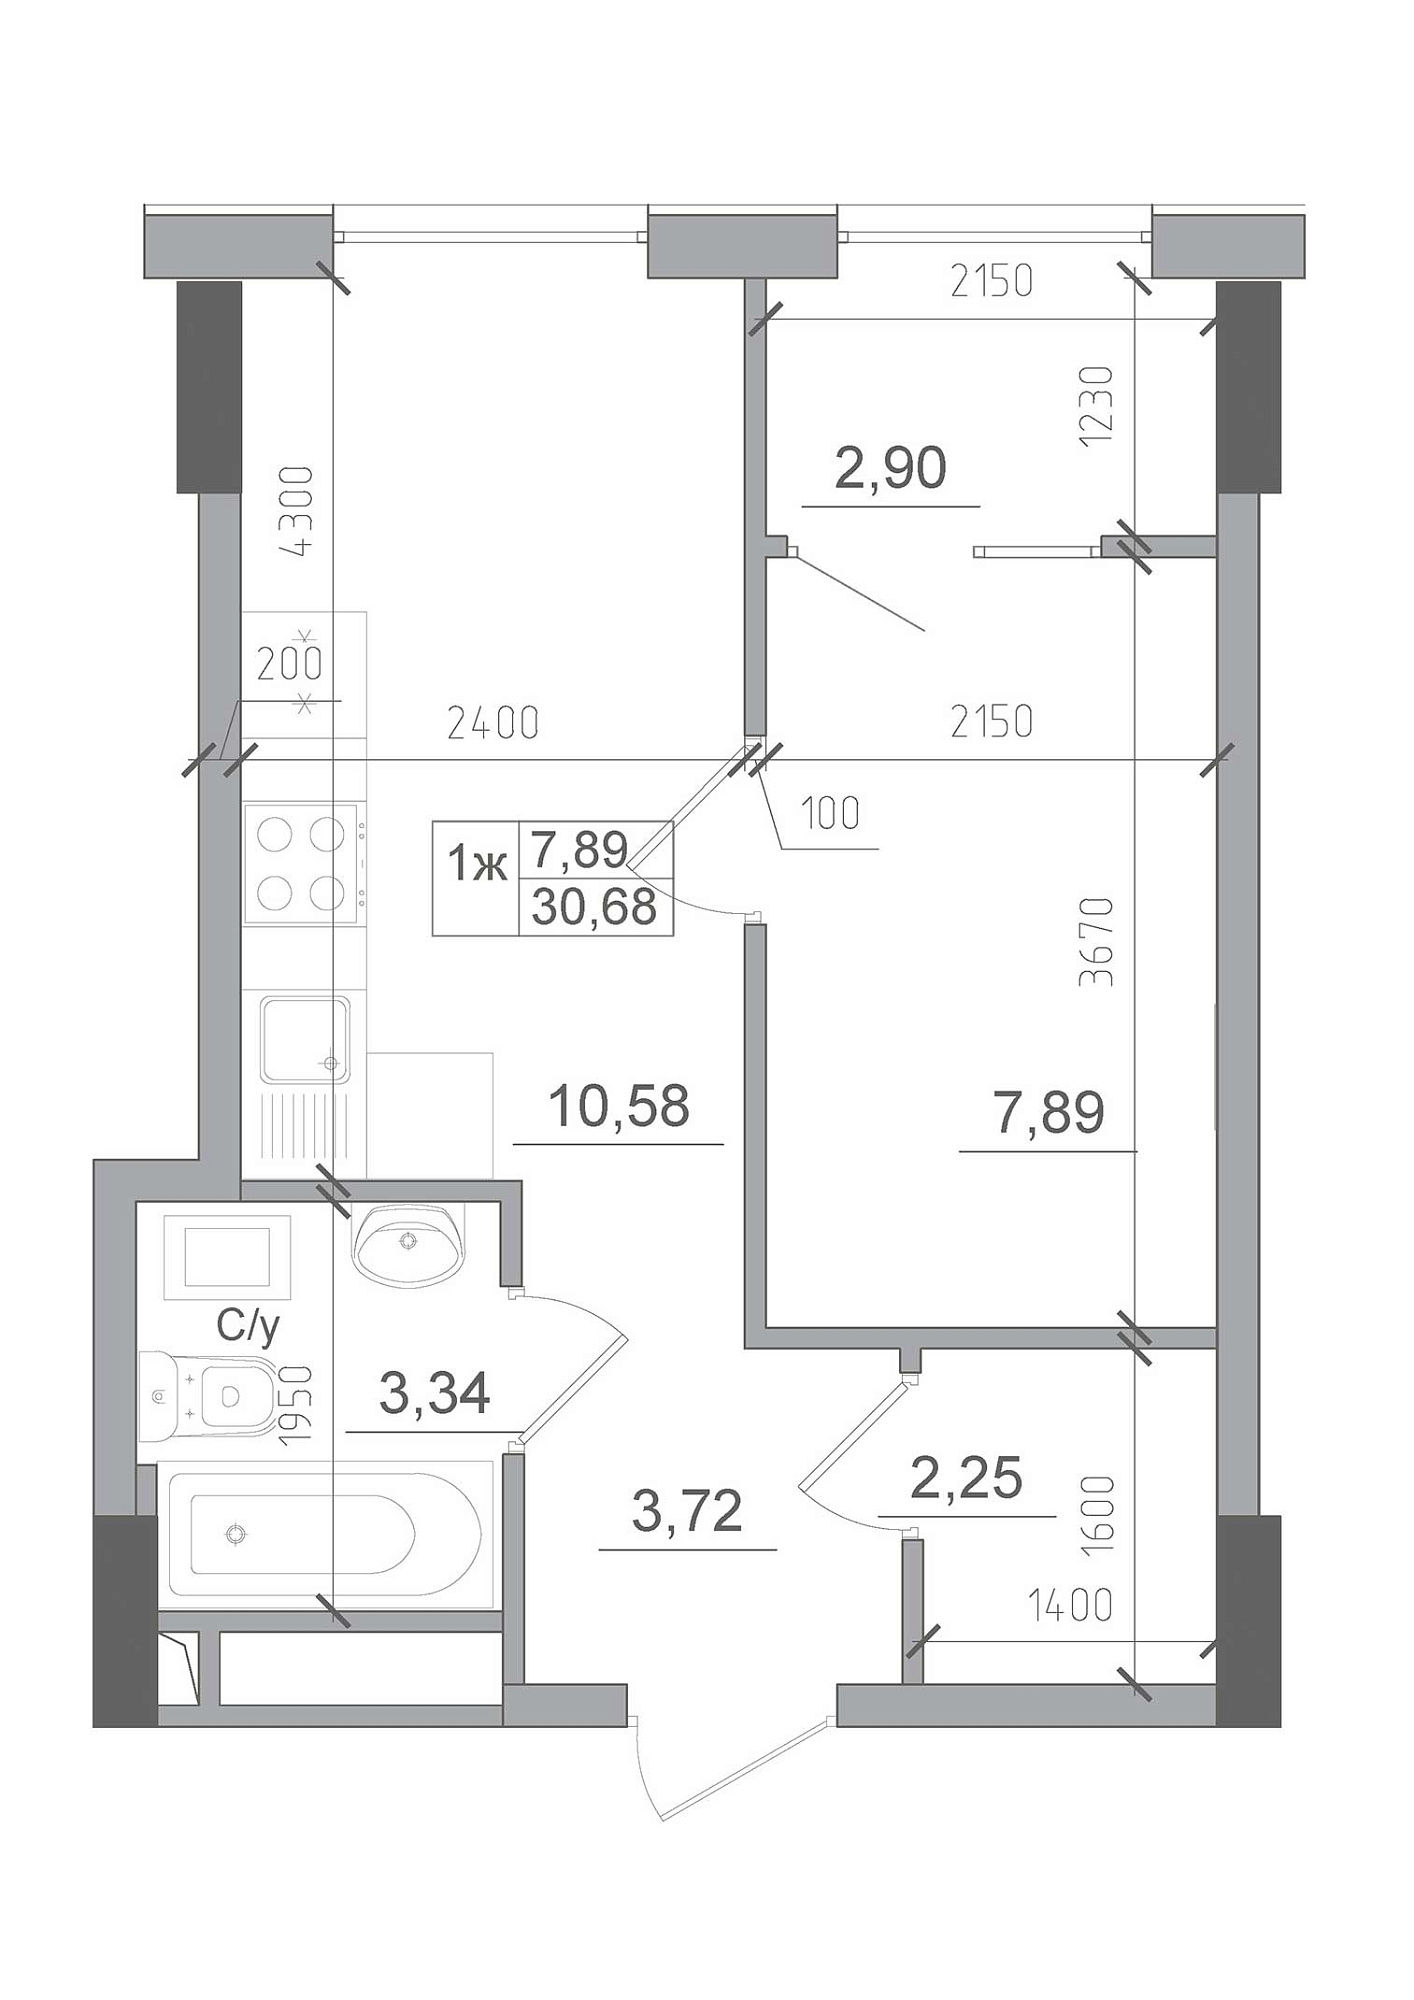 Планировка 1-к квартира площей 30.68м2, AB-22-10/00012.